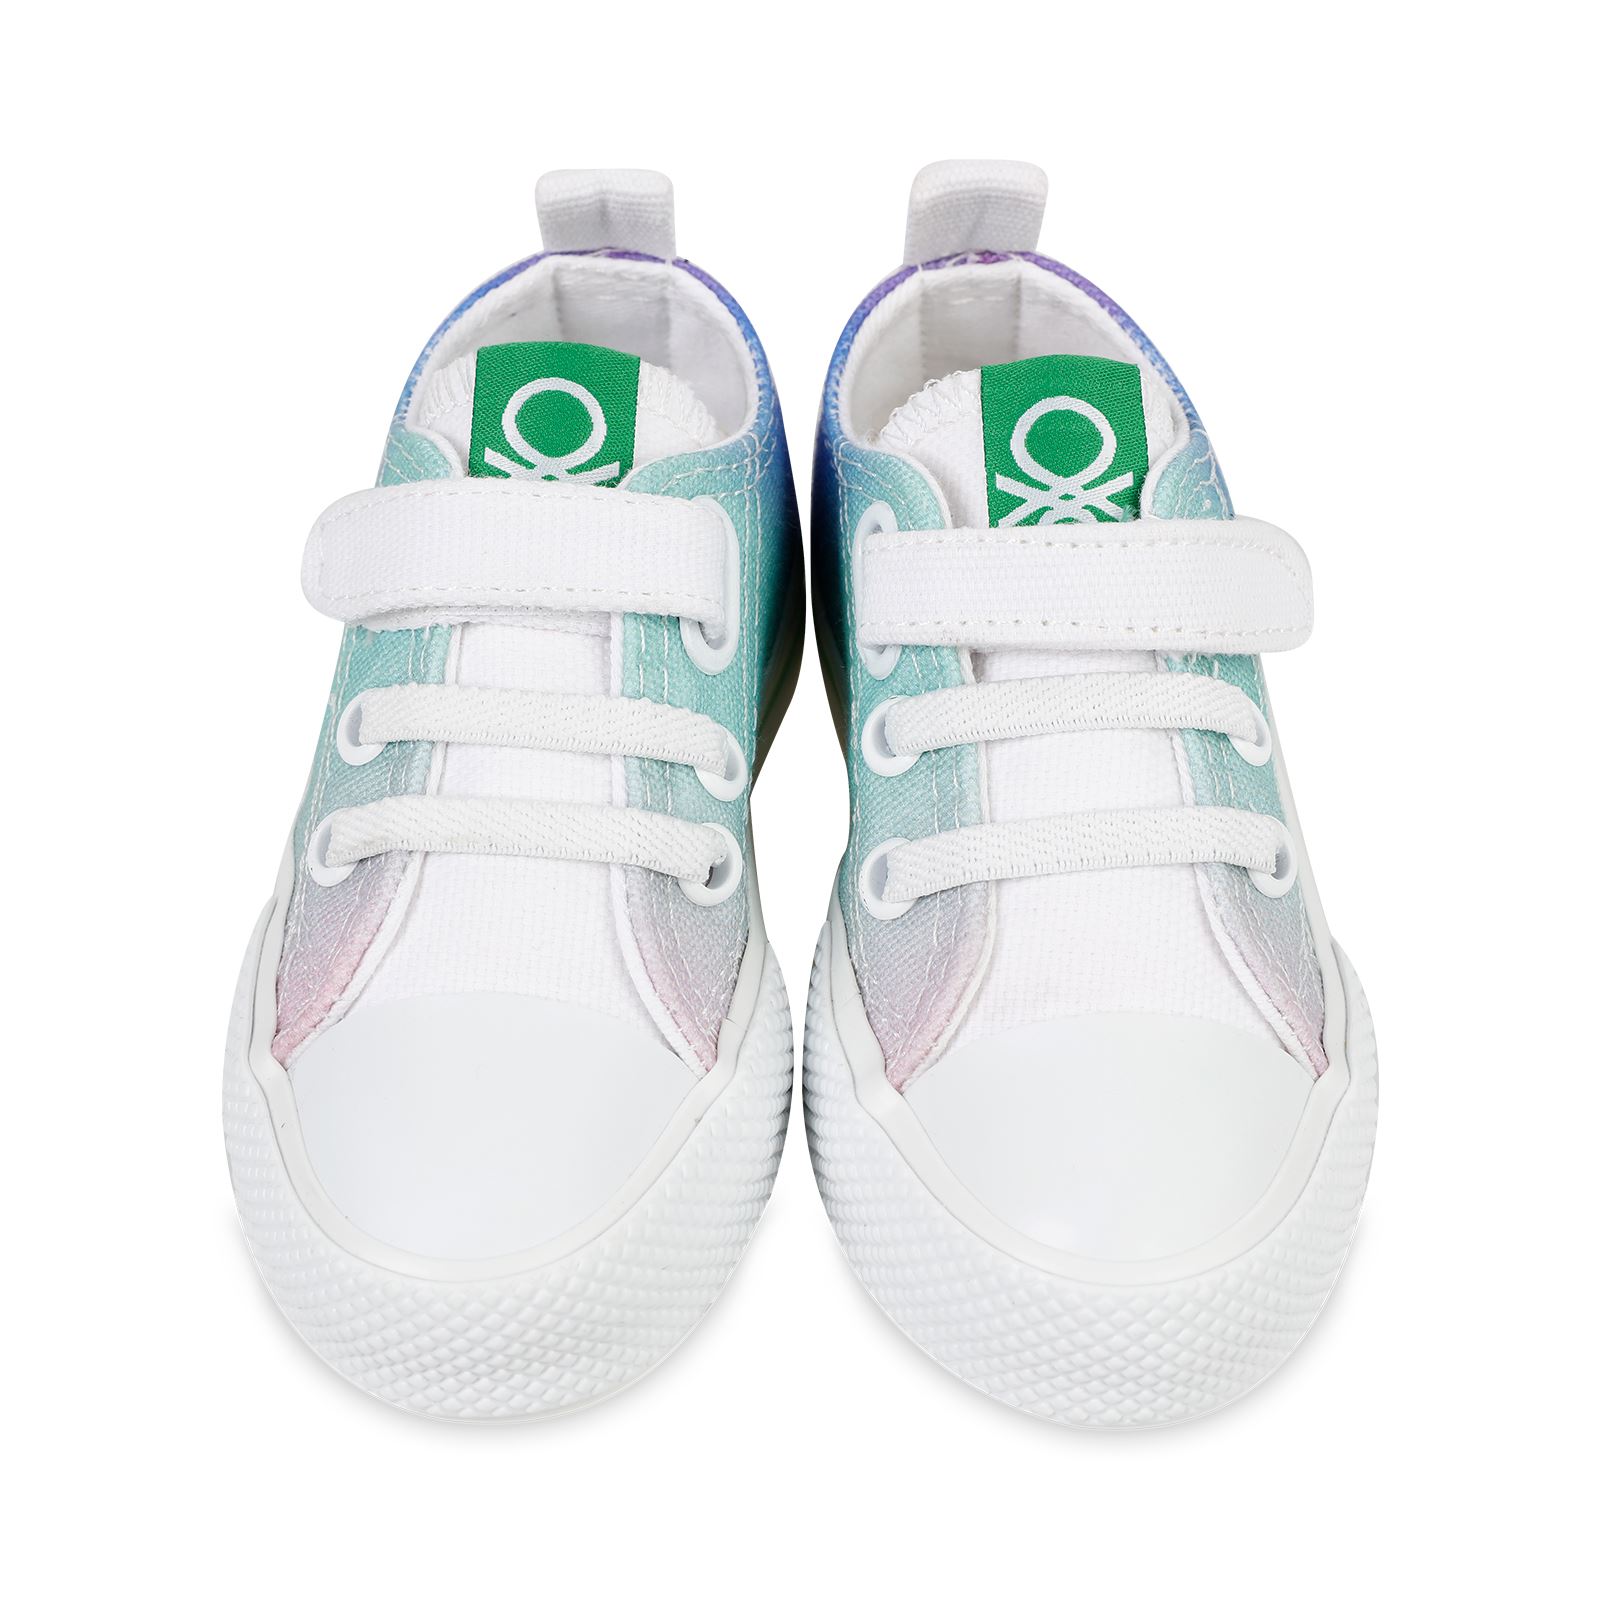 Benetton Kız Çocuk Spor Ayakkabı 22-25 Numara Mor